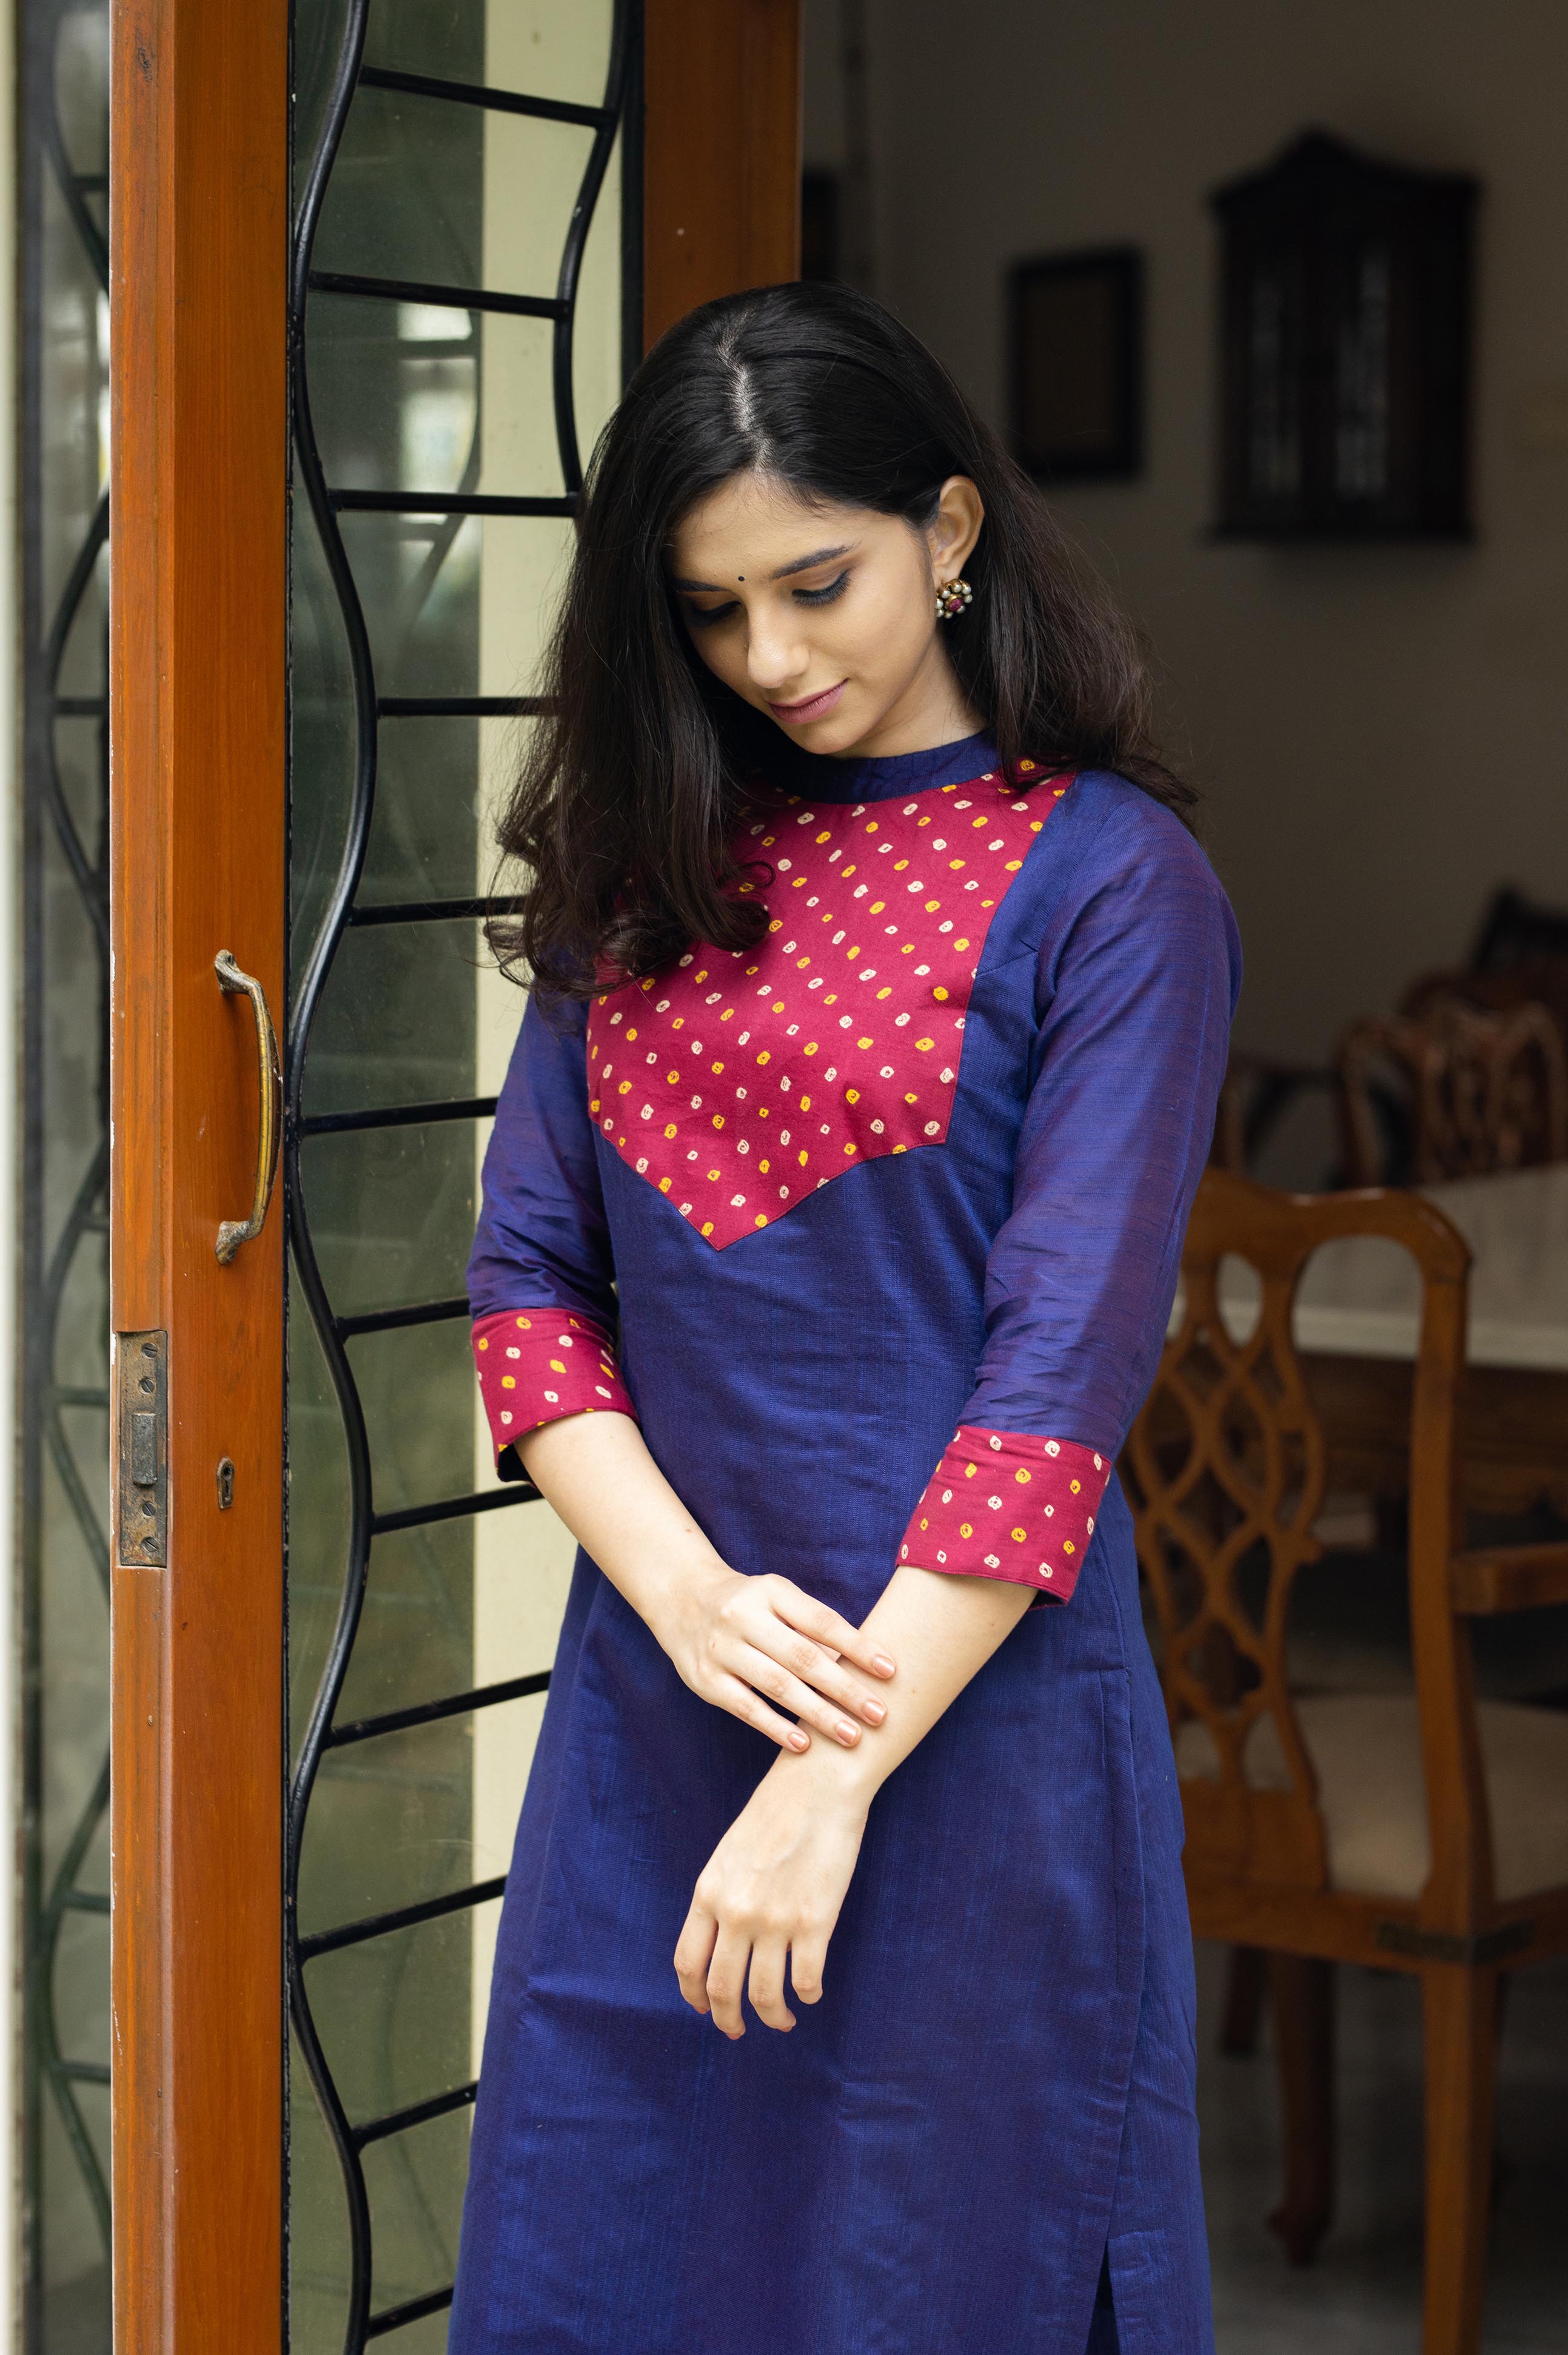 Purple hand-embroidered bandhani cotton peplum top with pants - set of 2 |  Priya Chaudhary